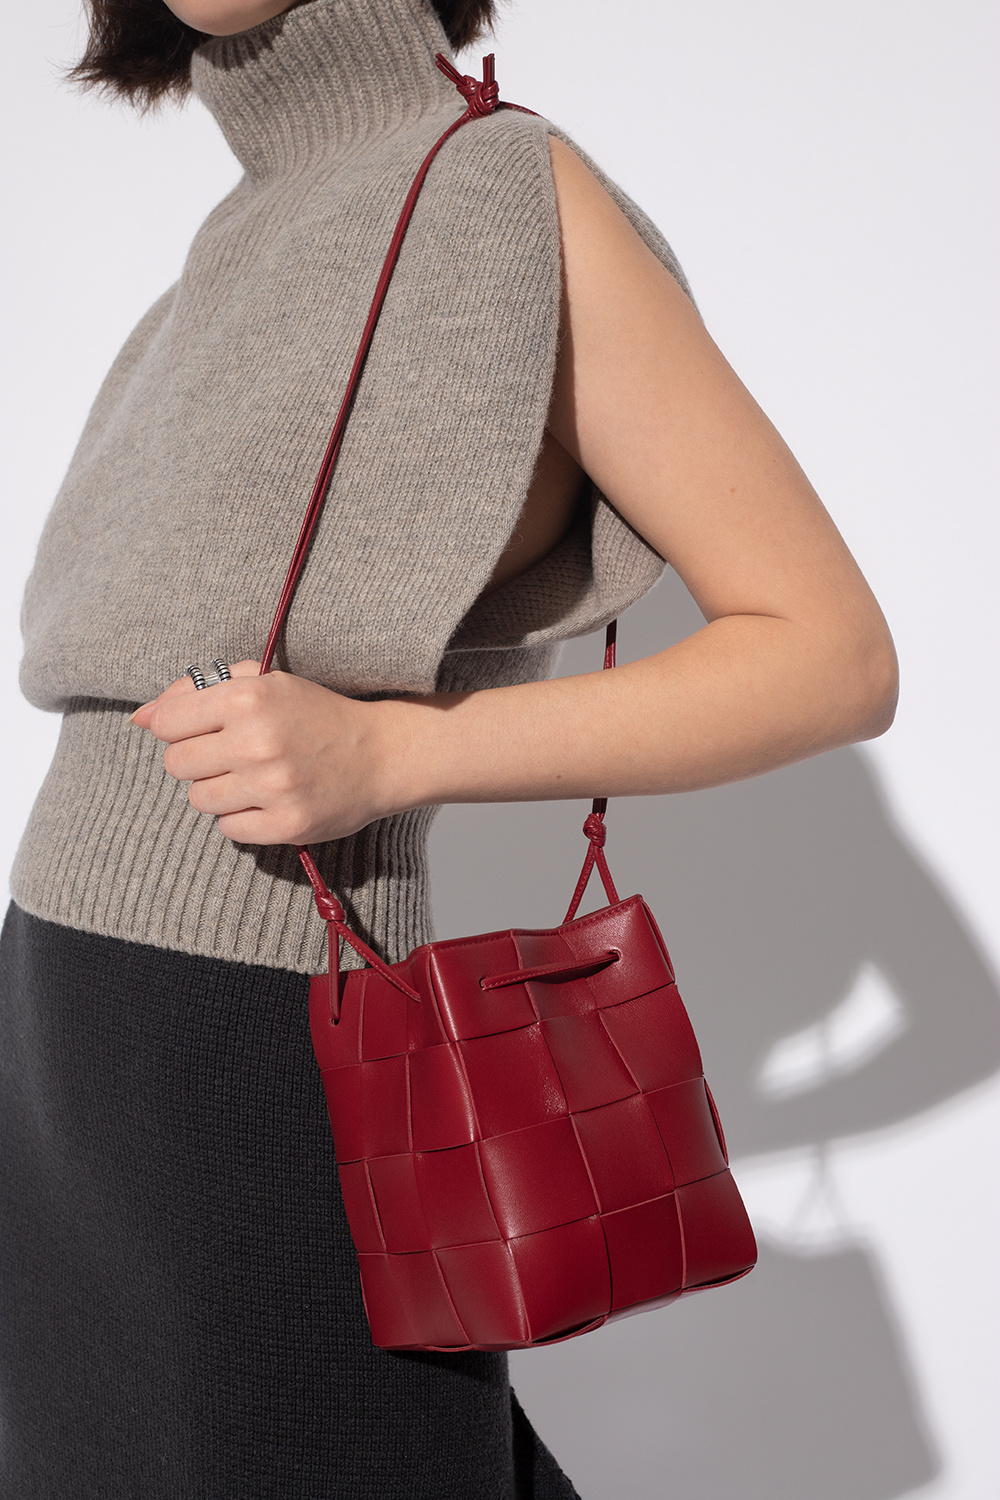 Bottega Veneta 'Cassette' shoulder bag, Women's Bags